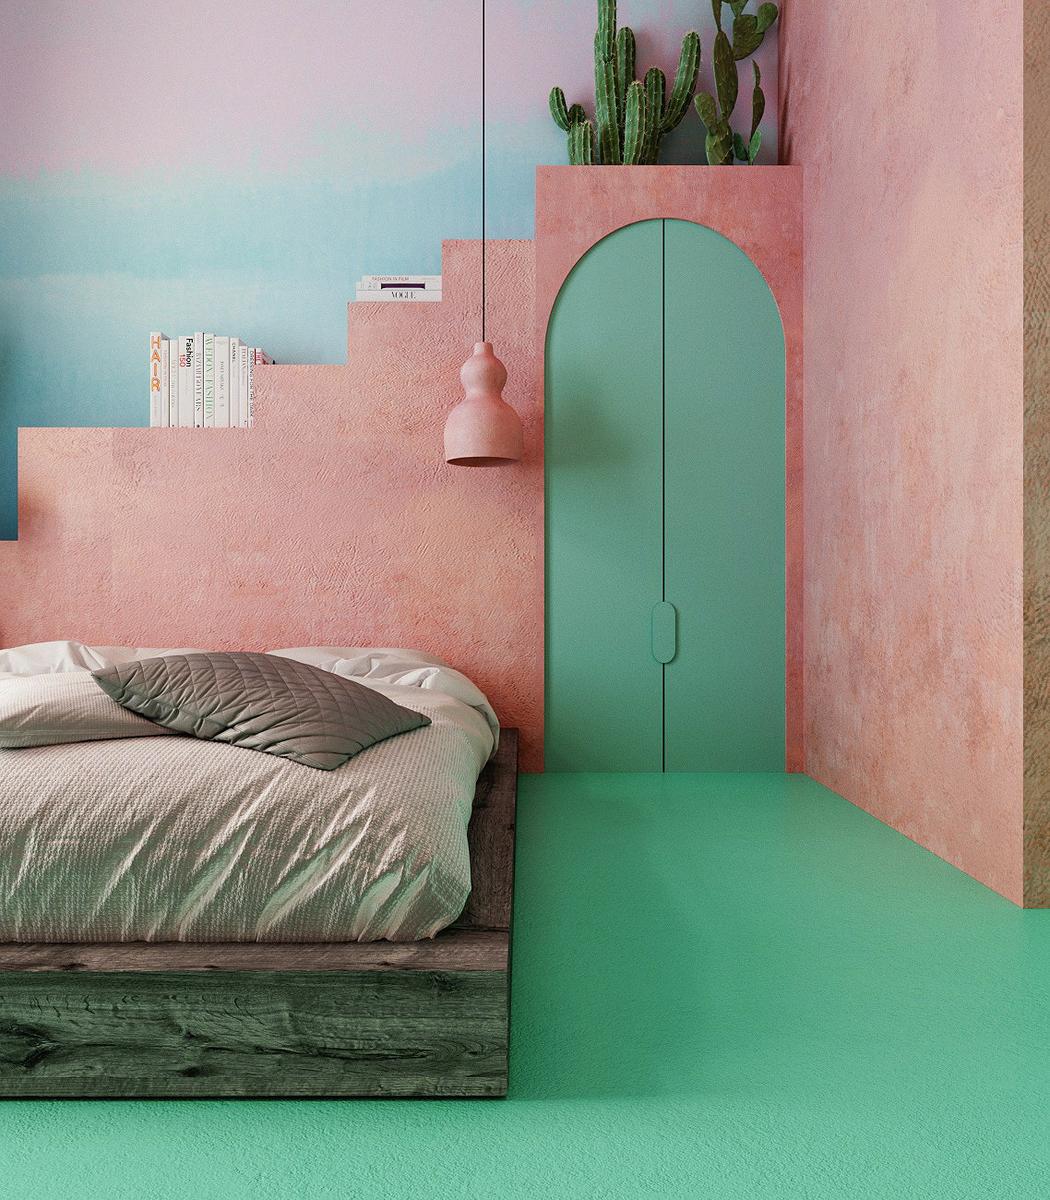 Dormitorio en tonos verdes y rosas.